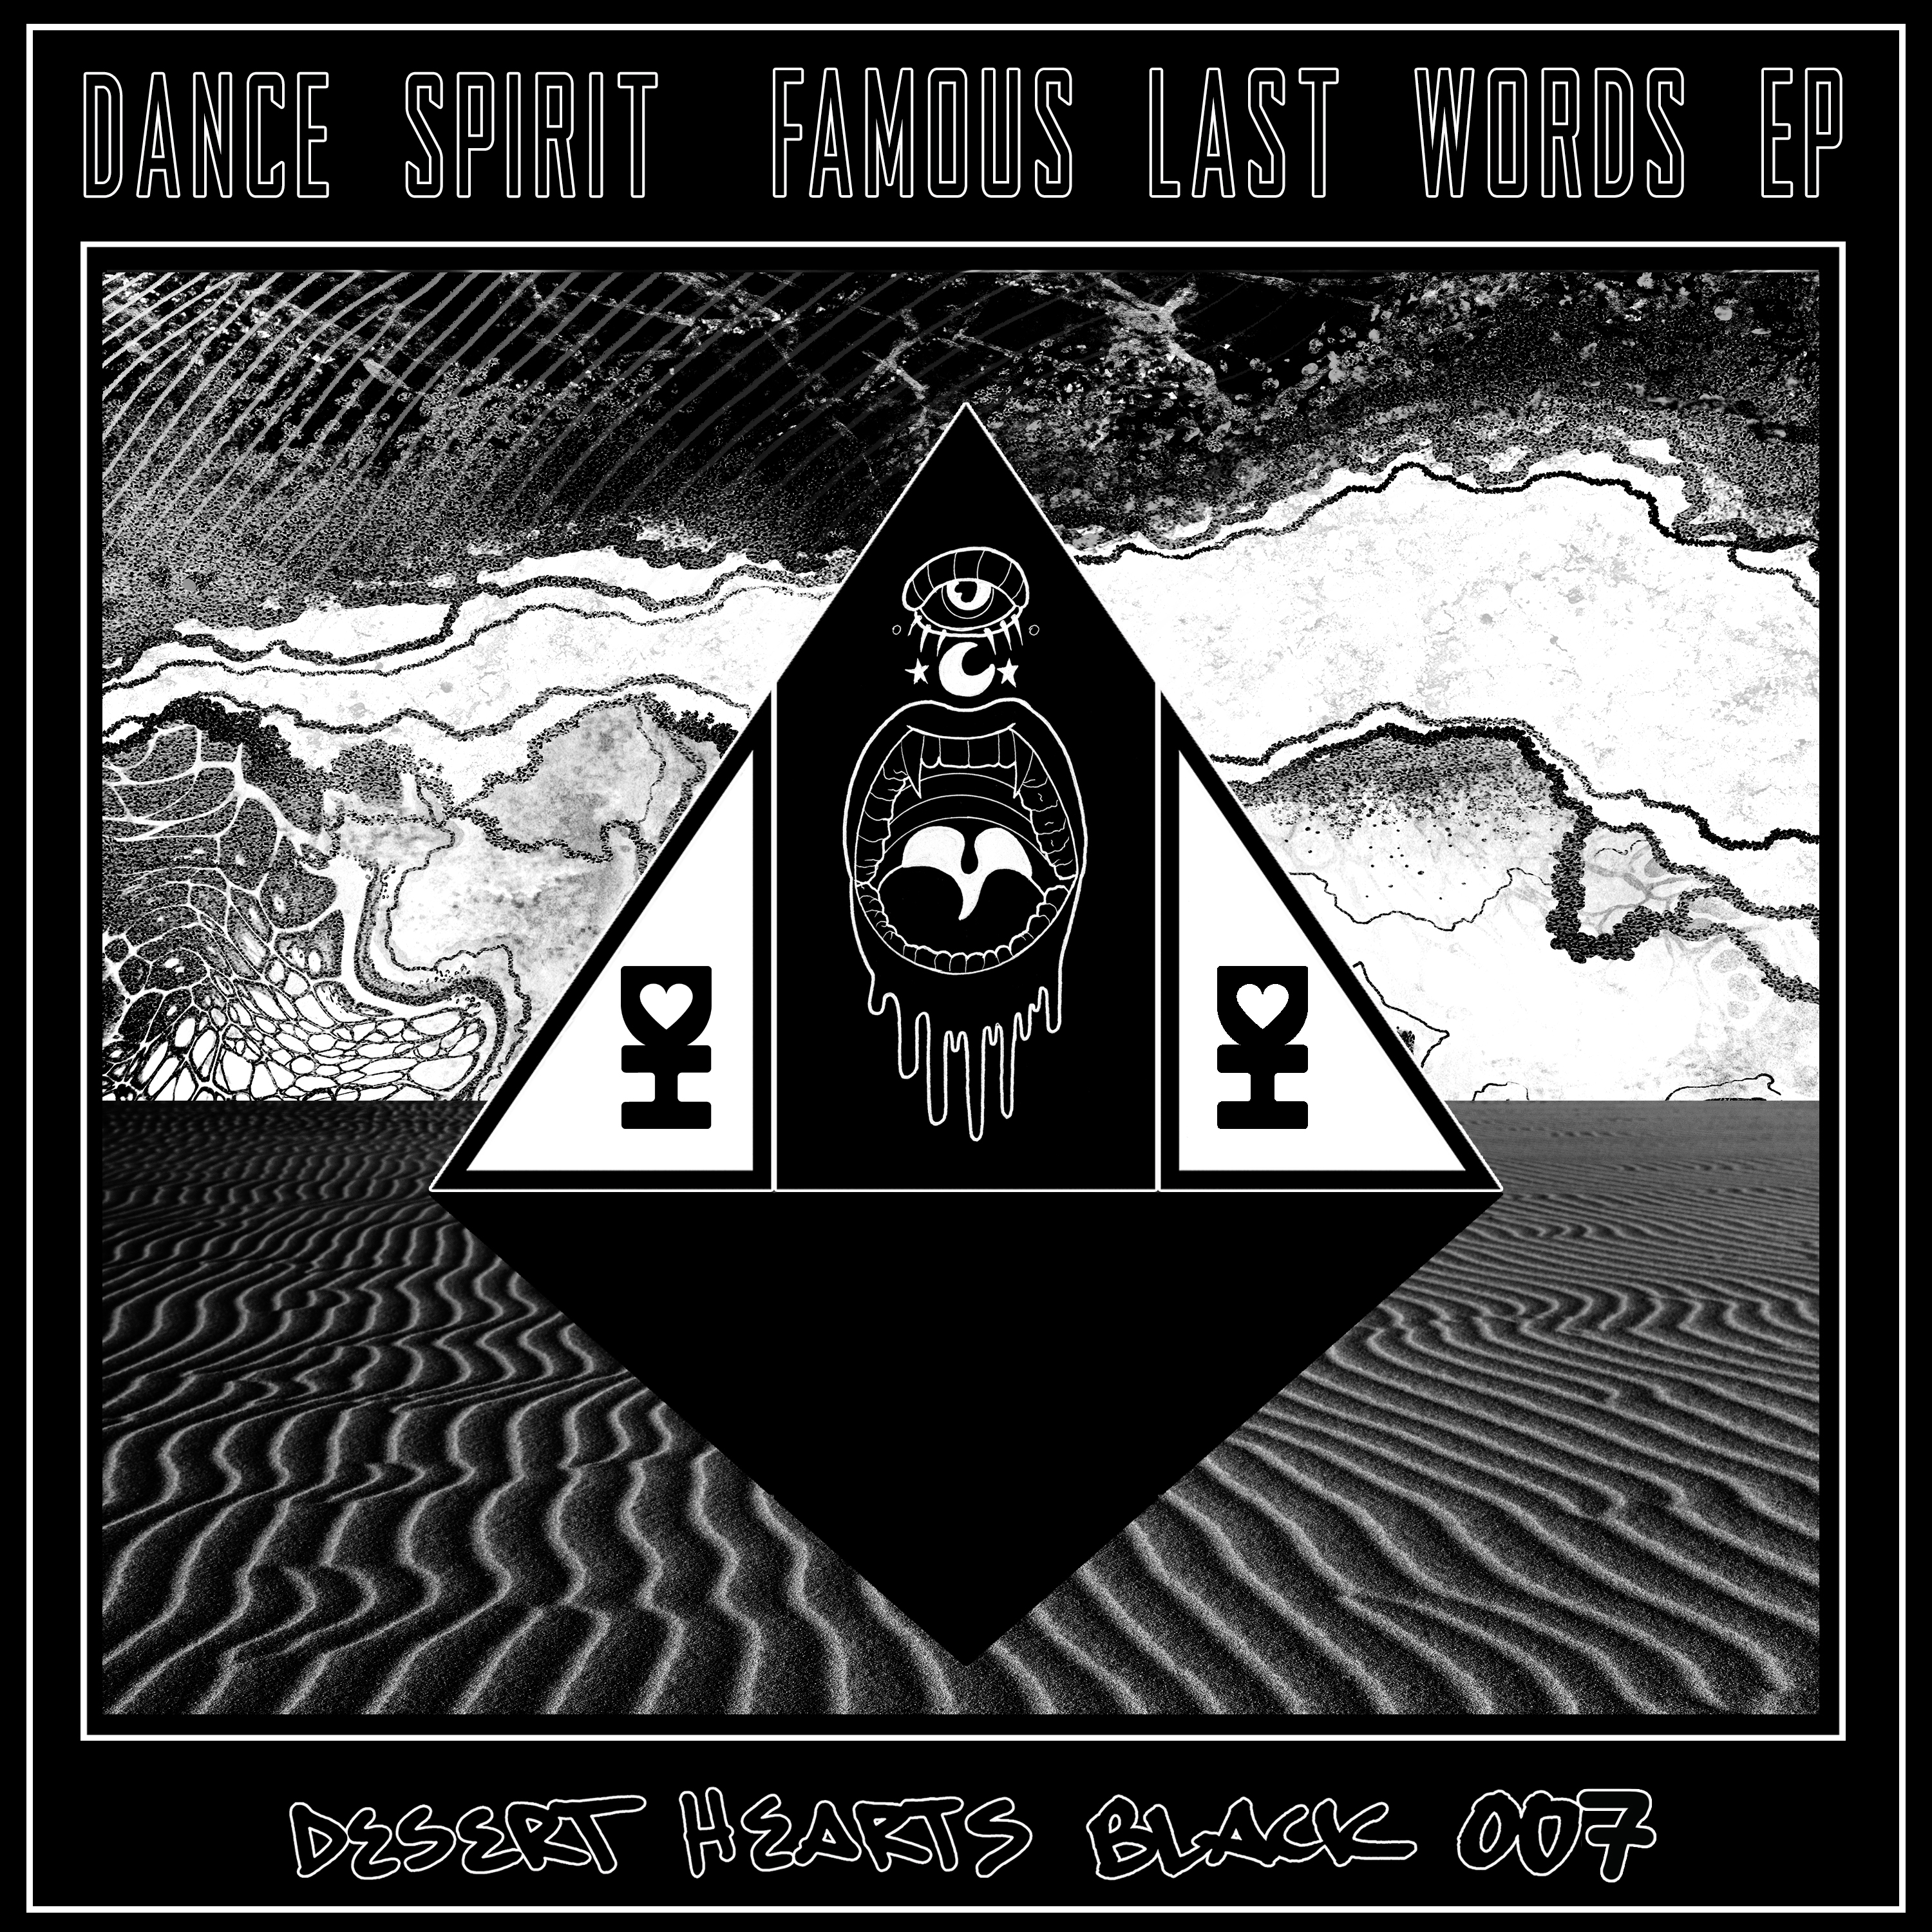 Dance Spirit Releases ‘Famous Last Words’ EP on Desert Hearts Black